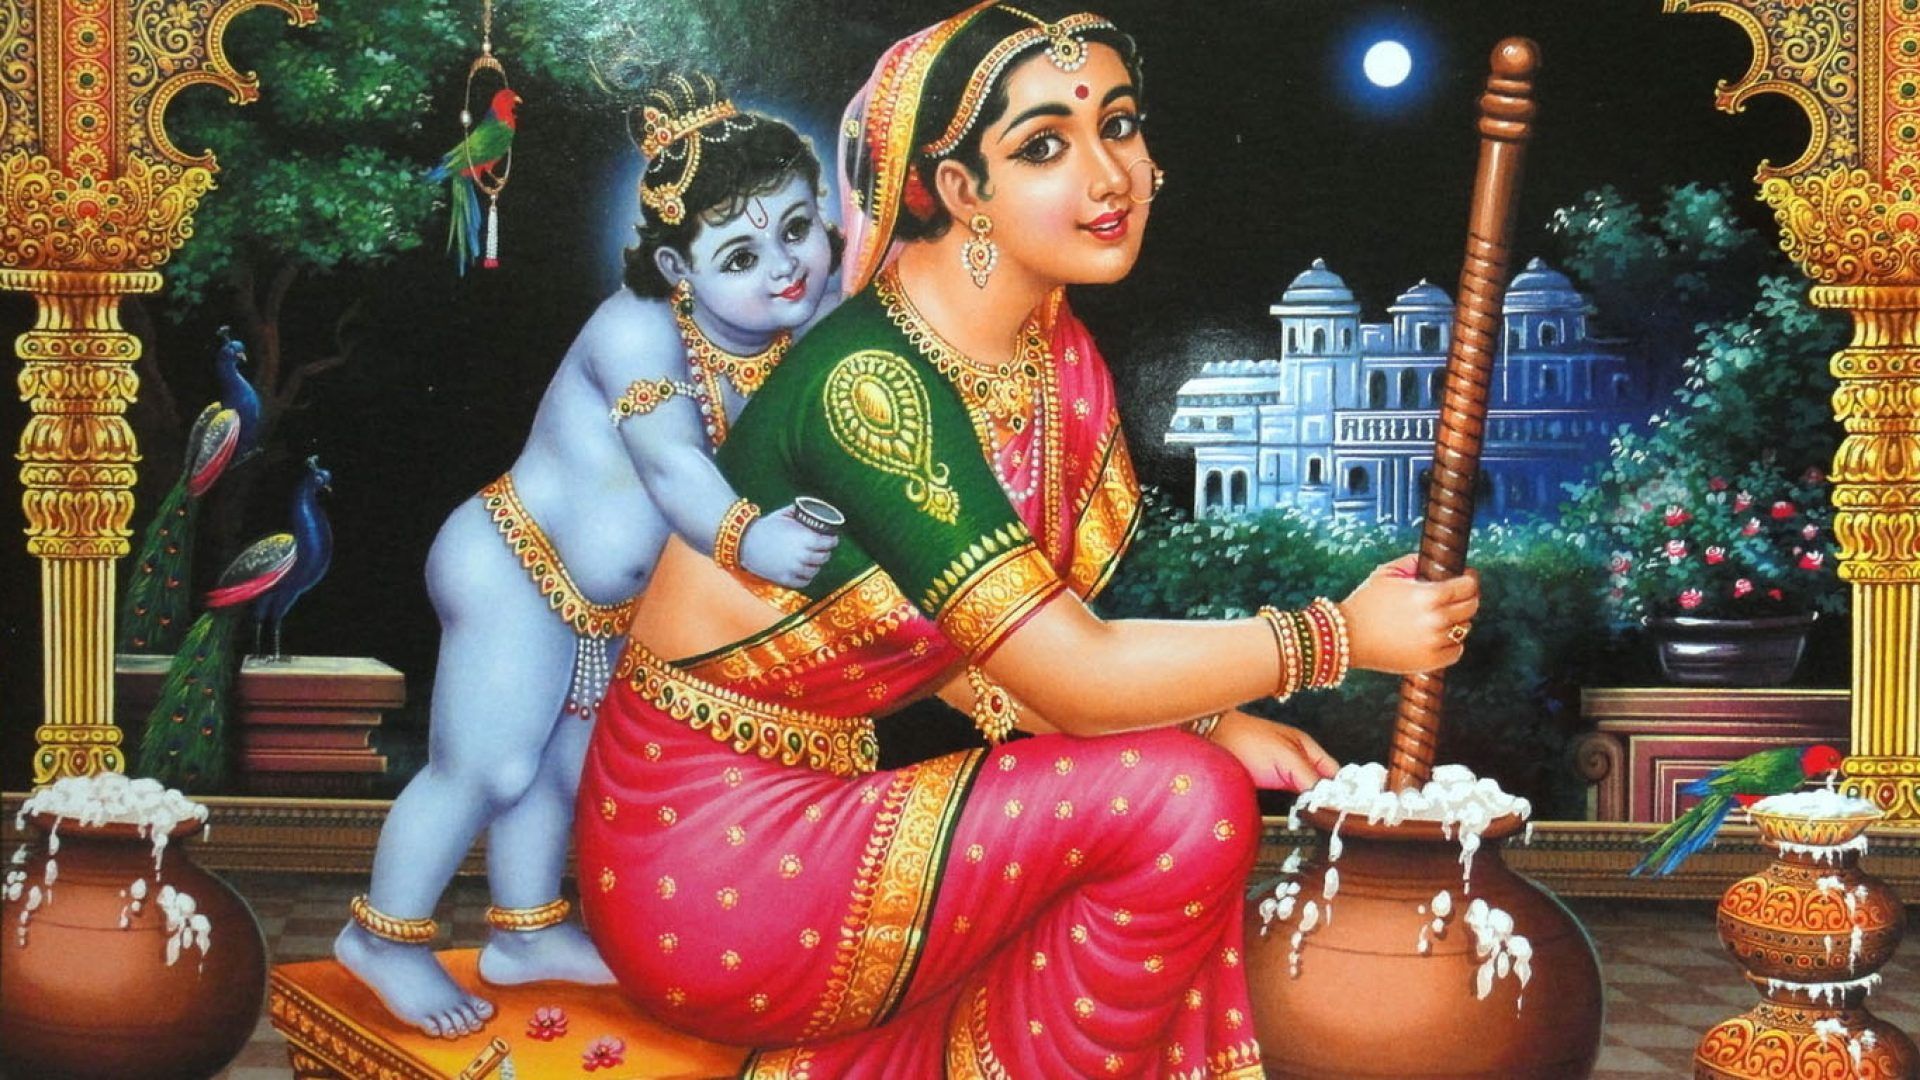 Krishna With Yashoda Maiyya Image. Hindu Gods and Goddesses